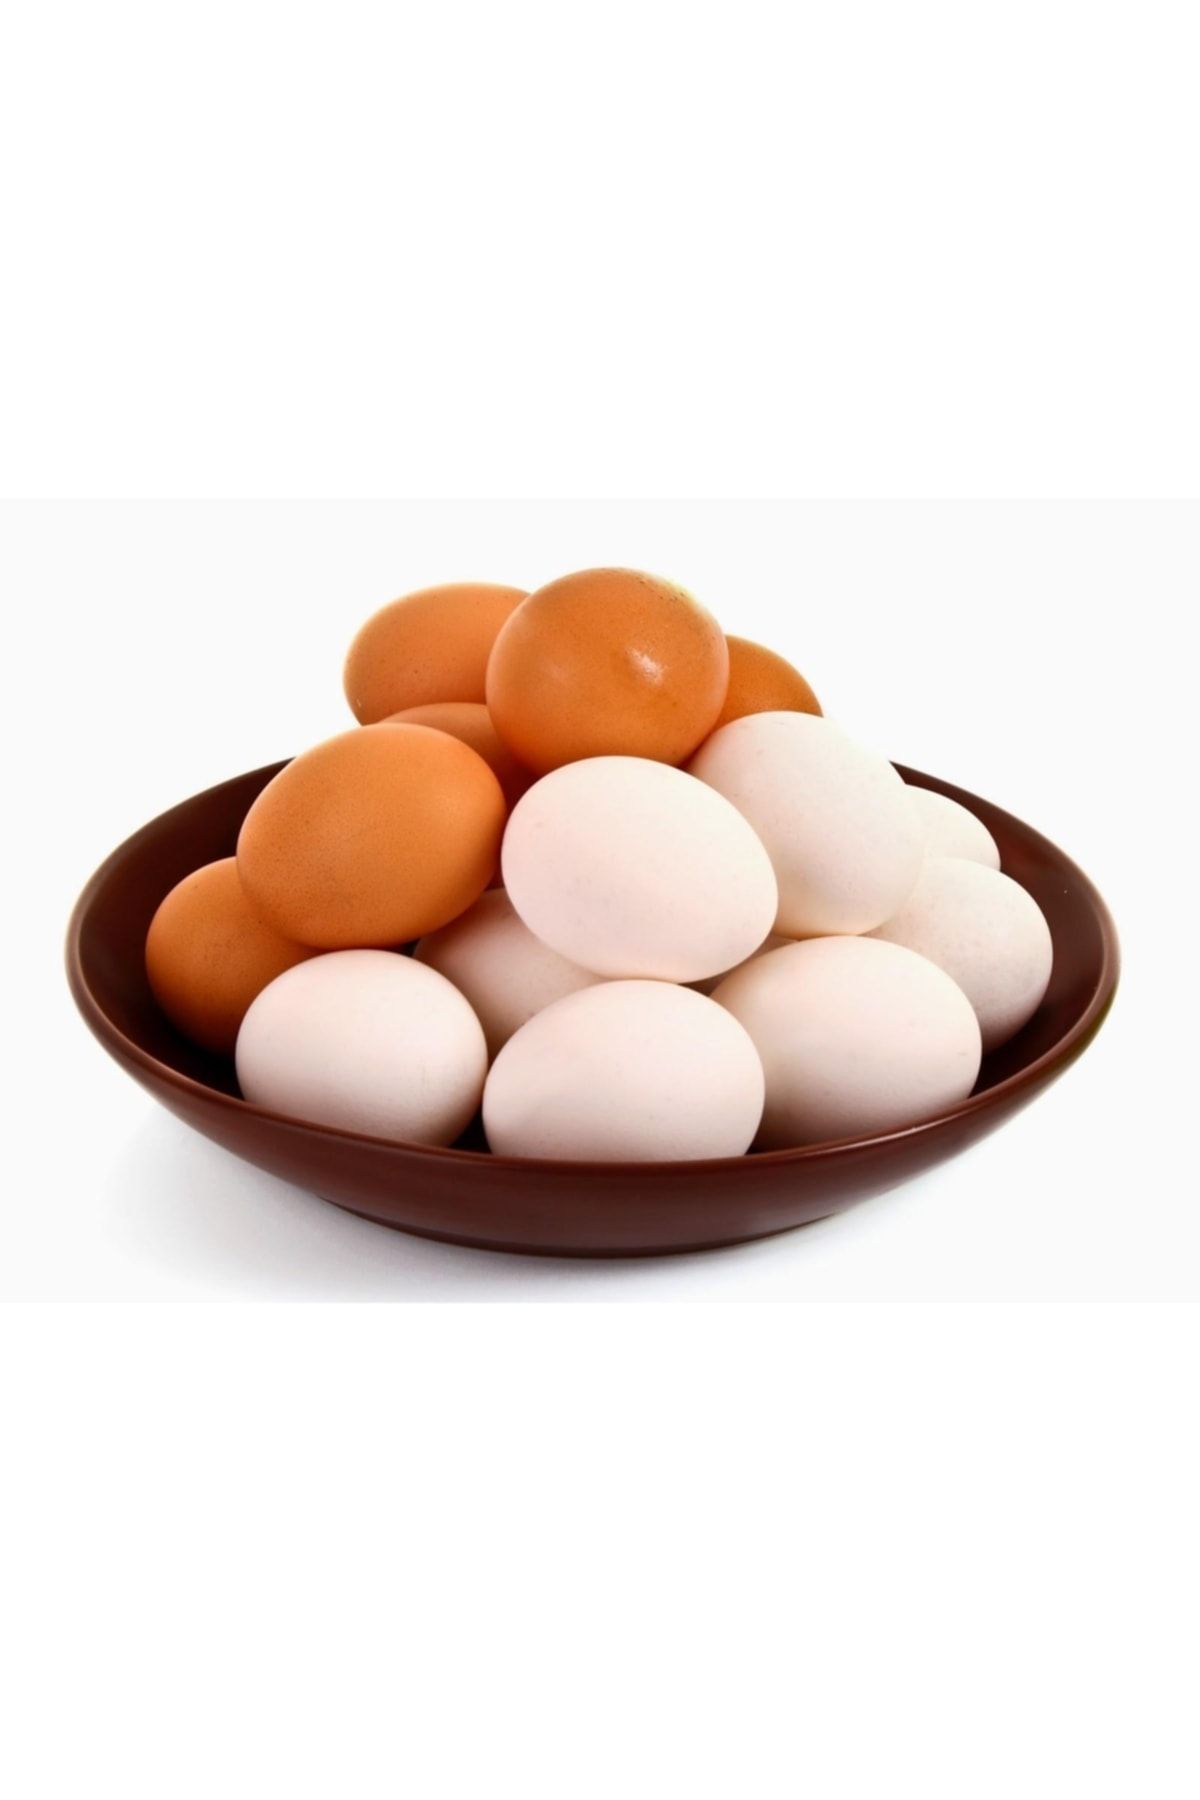 mutlu tavukçuluk Plastik 10 Adet Yapay Beyaz Tavuk Yumurtası Orijinal Boyutta Gezen Tavuk Yumurtası